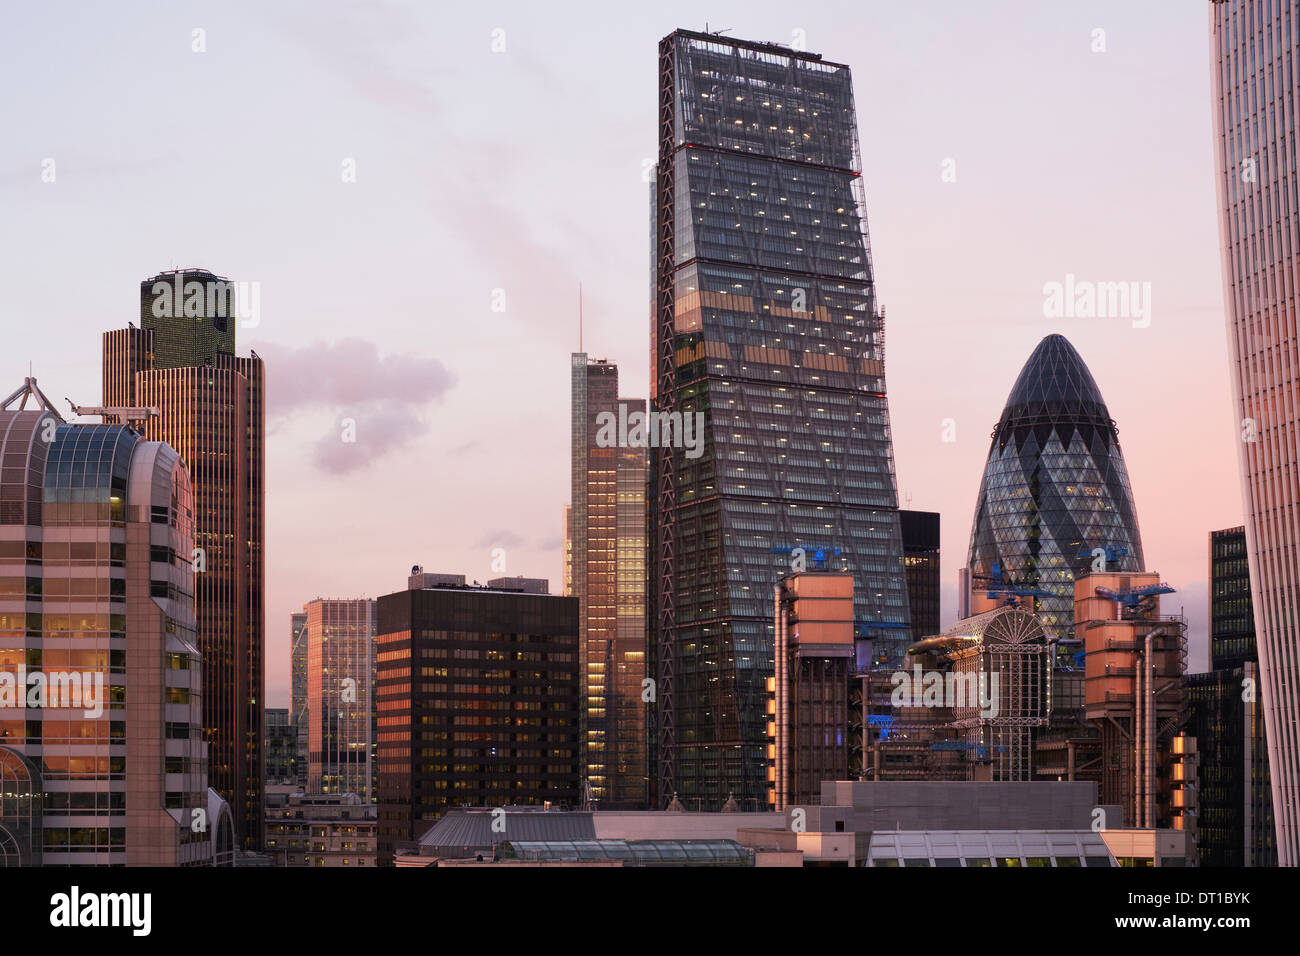 Stadtansichten London, City of London 2013, London, Vereinigtes Königreich, Architekt: verschiedene, 2013. Stockfoto